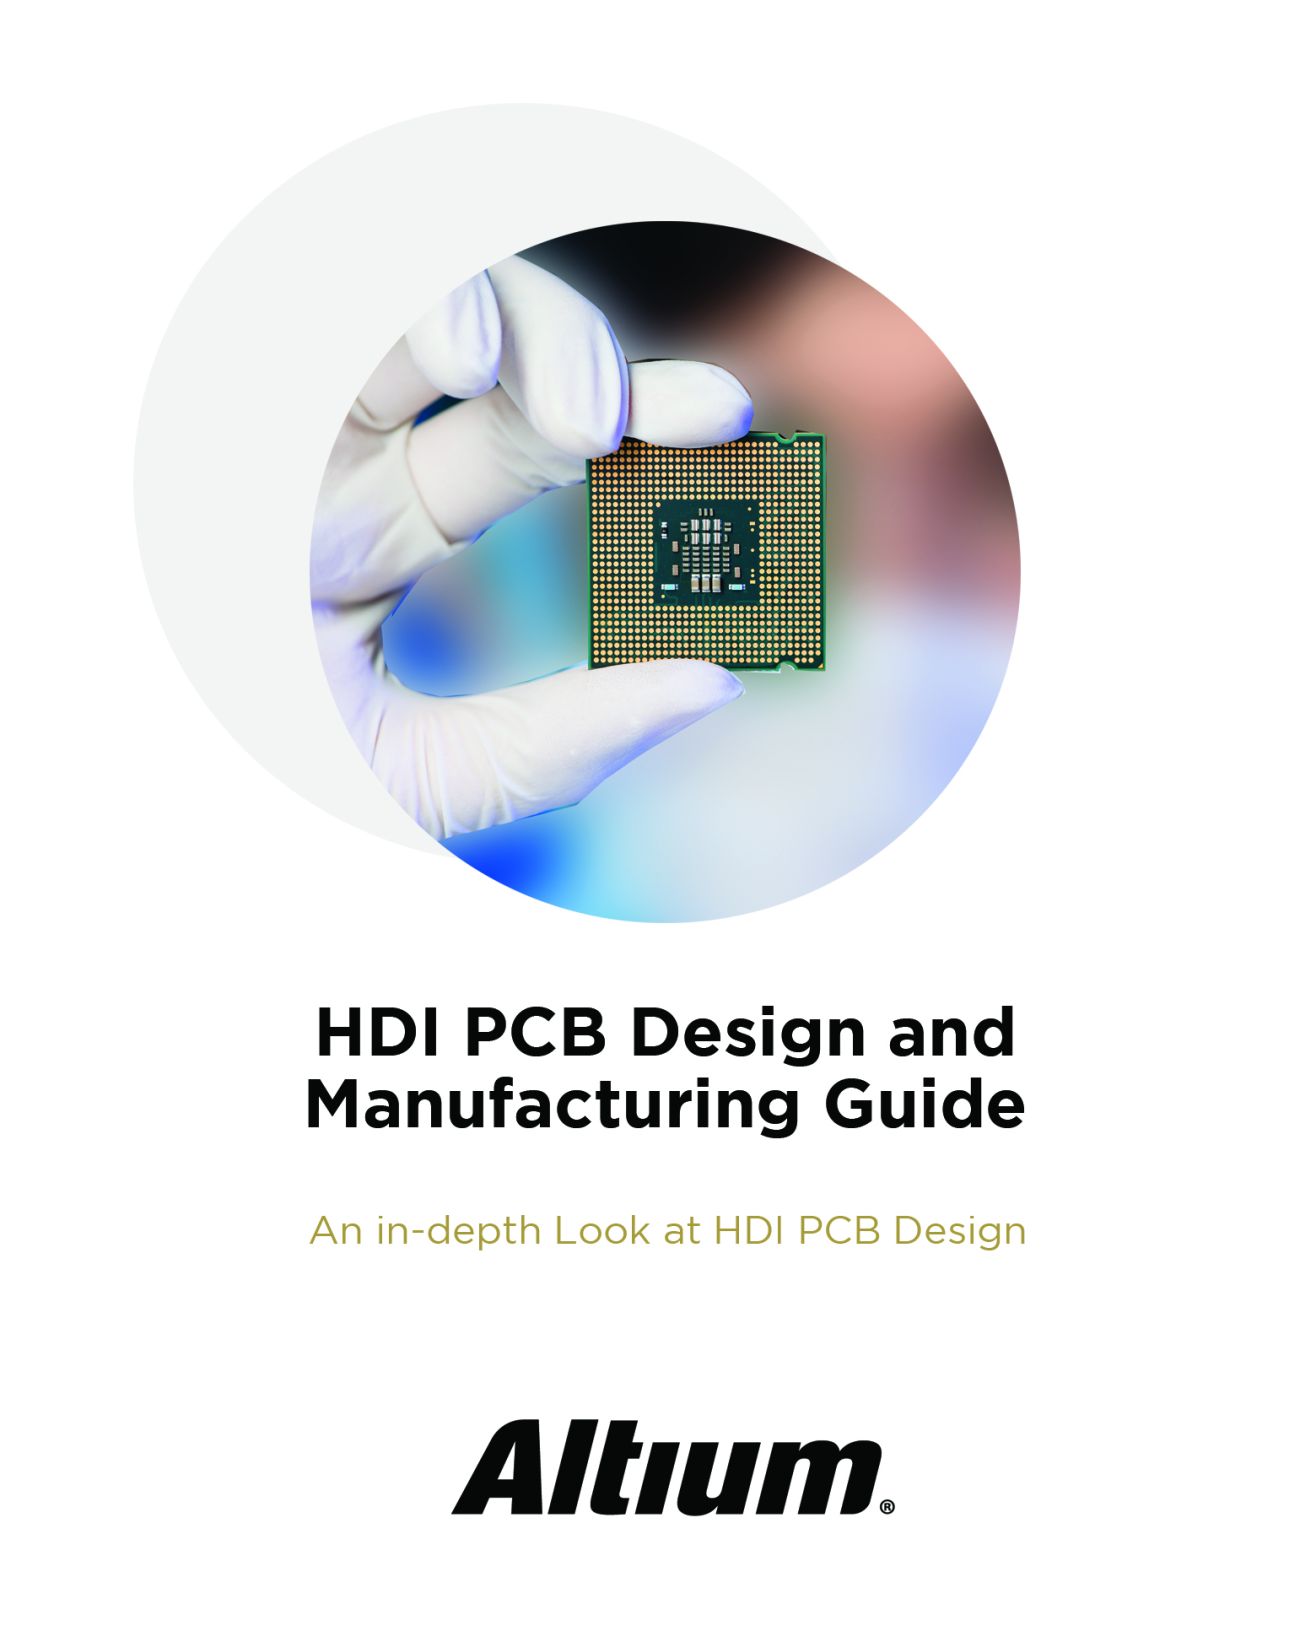 Guía de diseño y fabricación de PCB HDI - eBook